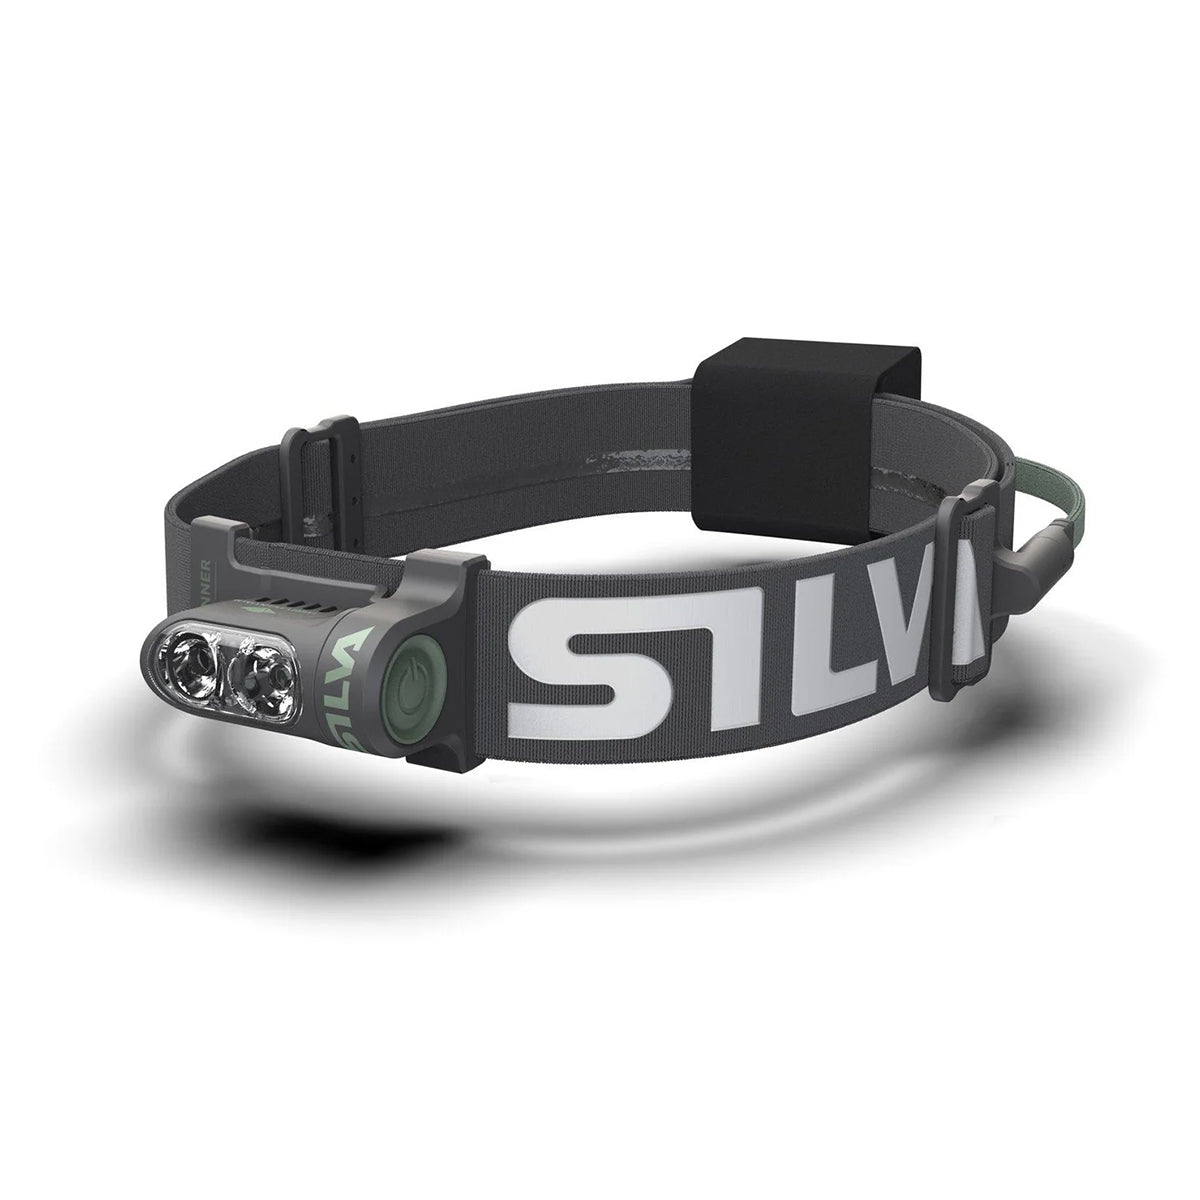 SILVA(シルバ) ヘッドランプトレイルランナー フリーH 37808, 黒 - 3